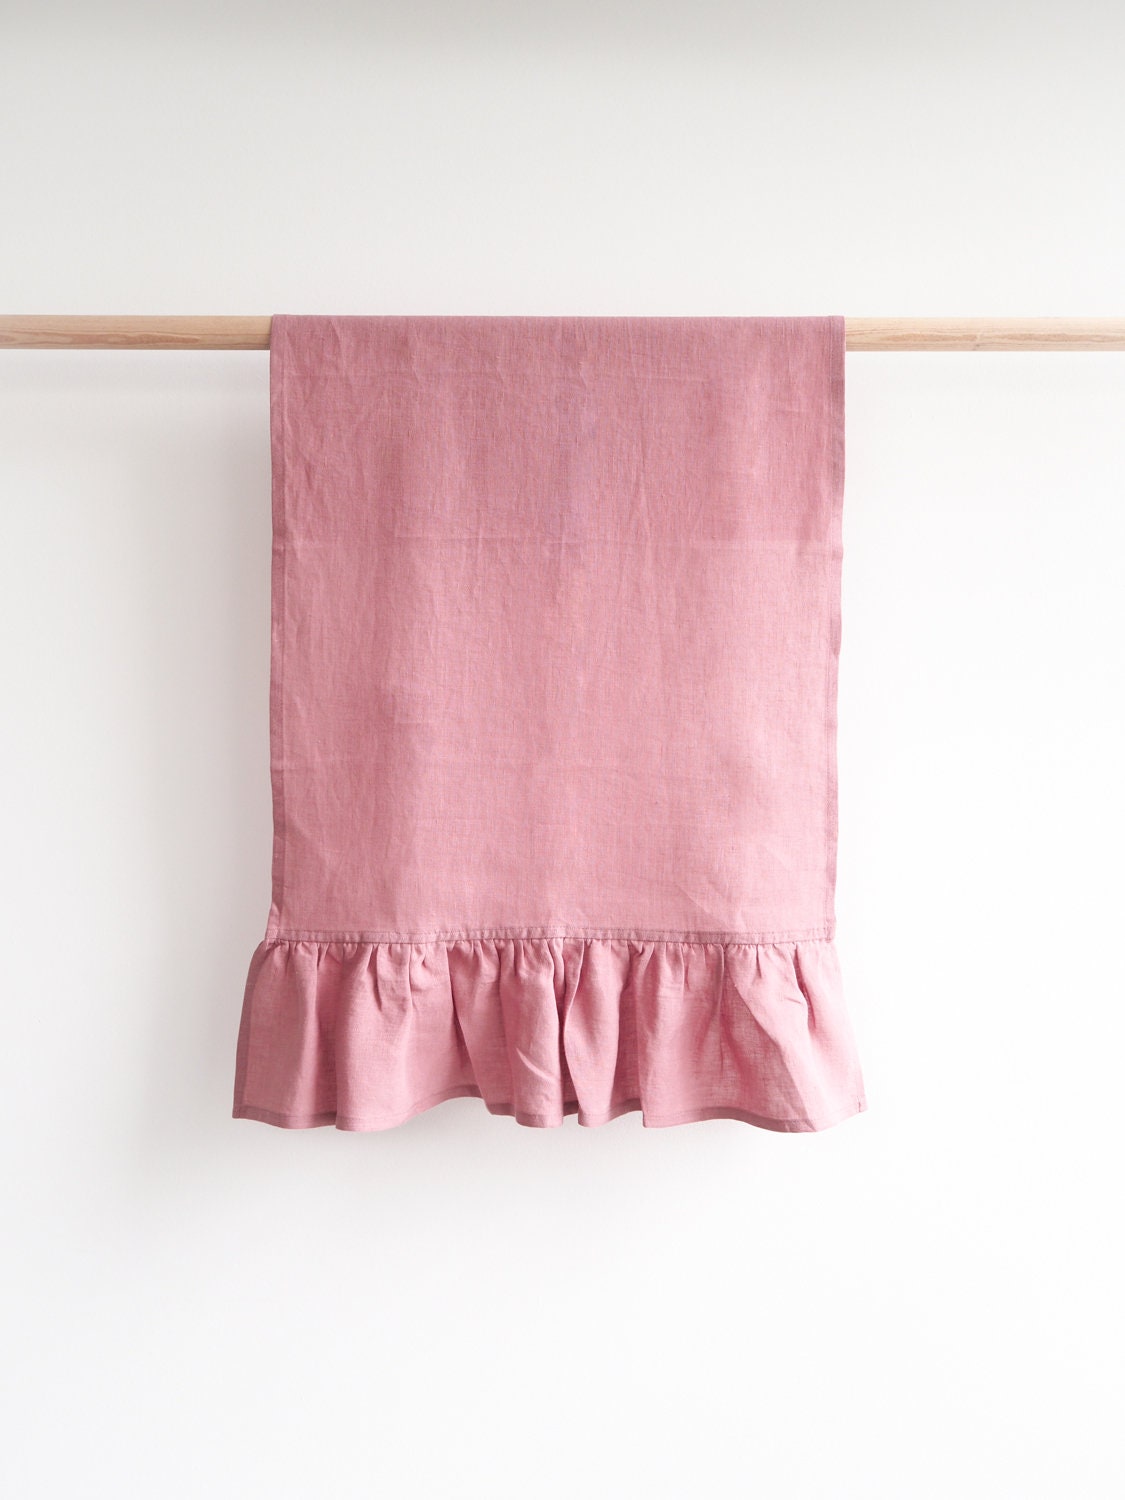 Cotton Plain Washable Kitchen Towel, Size: 45 X 70 cm